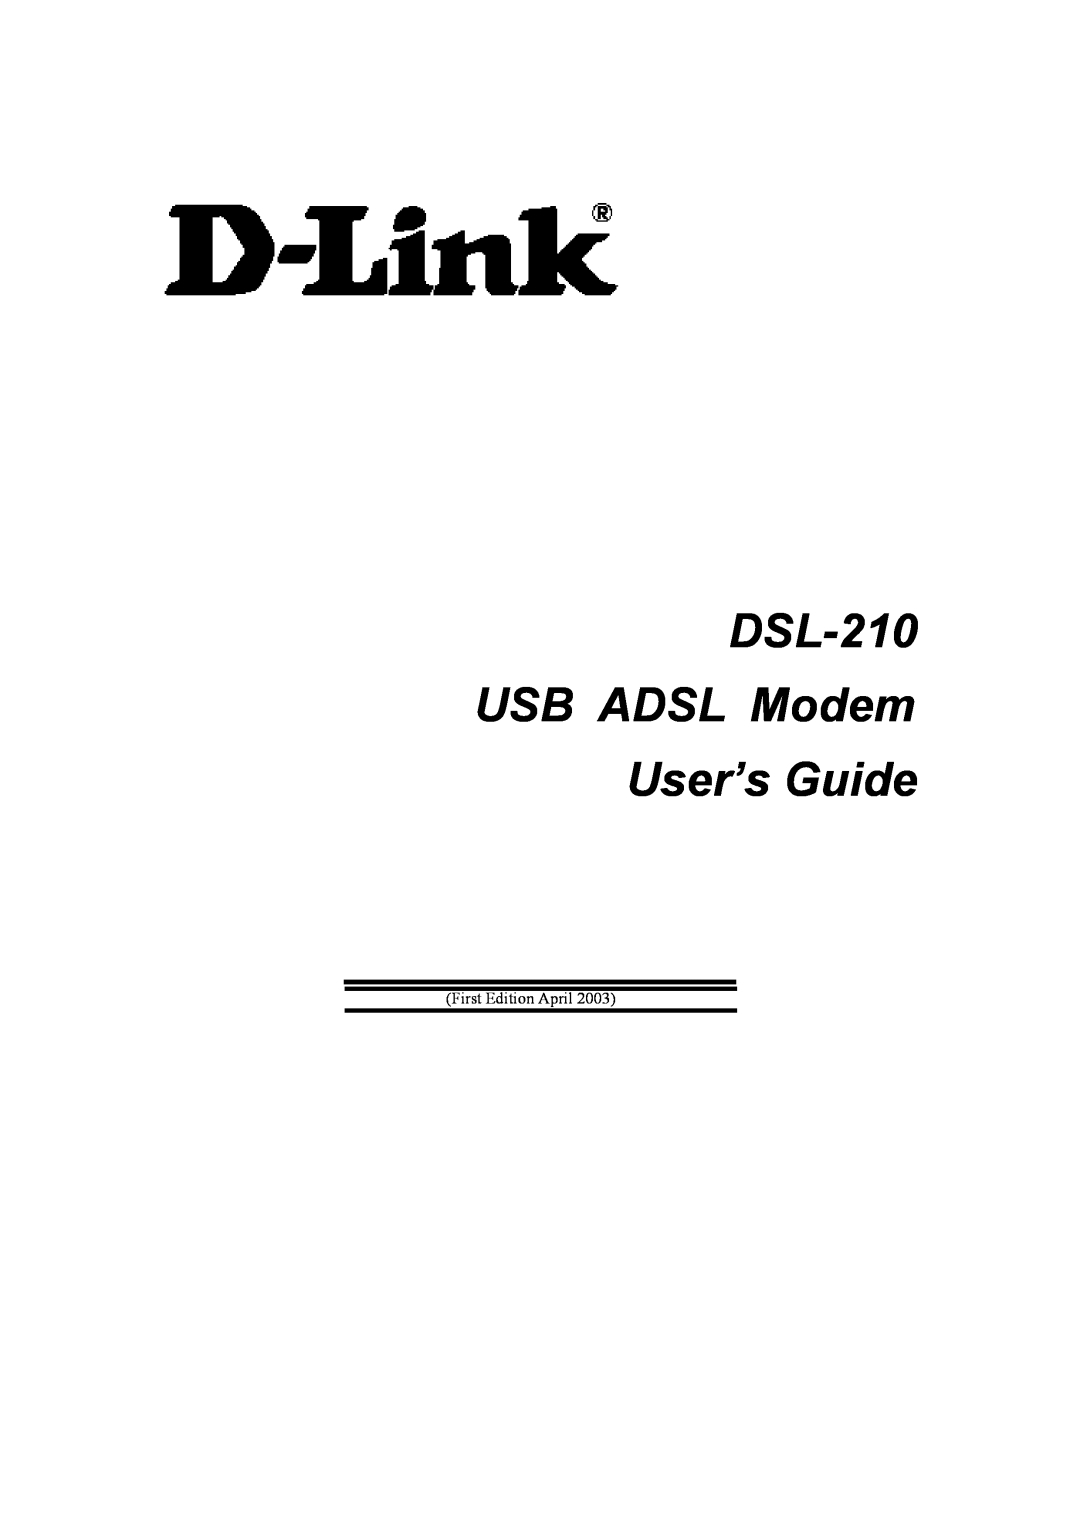 D-Link manual DSL-210 USB ADSL Modem User’s Guide 